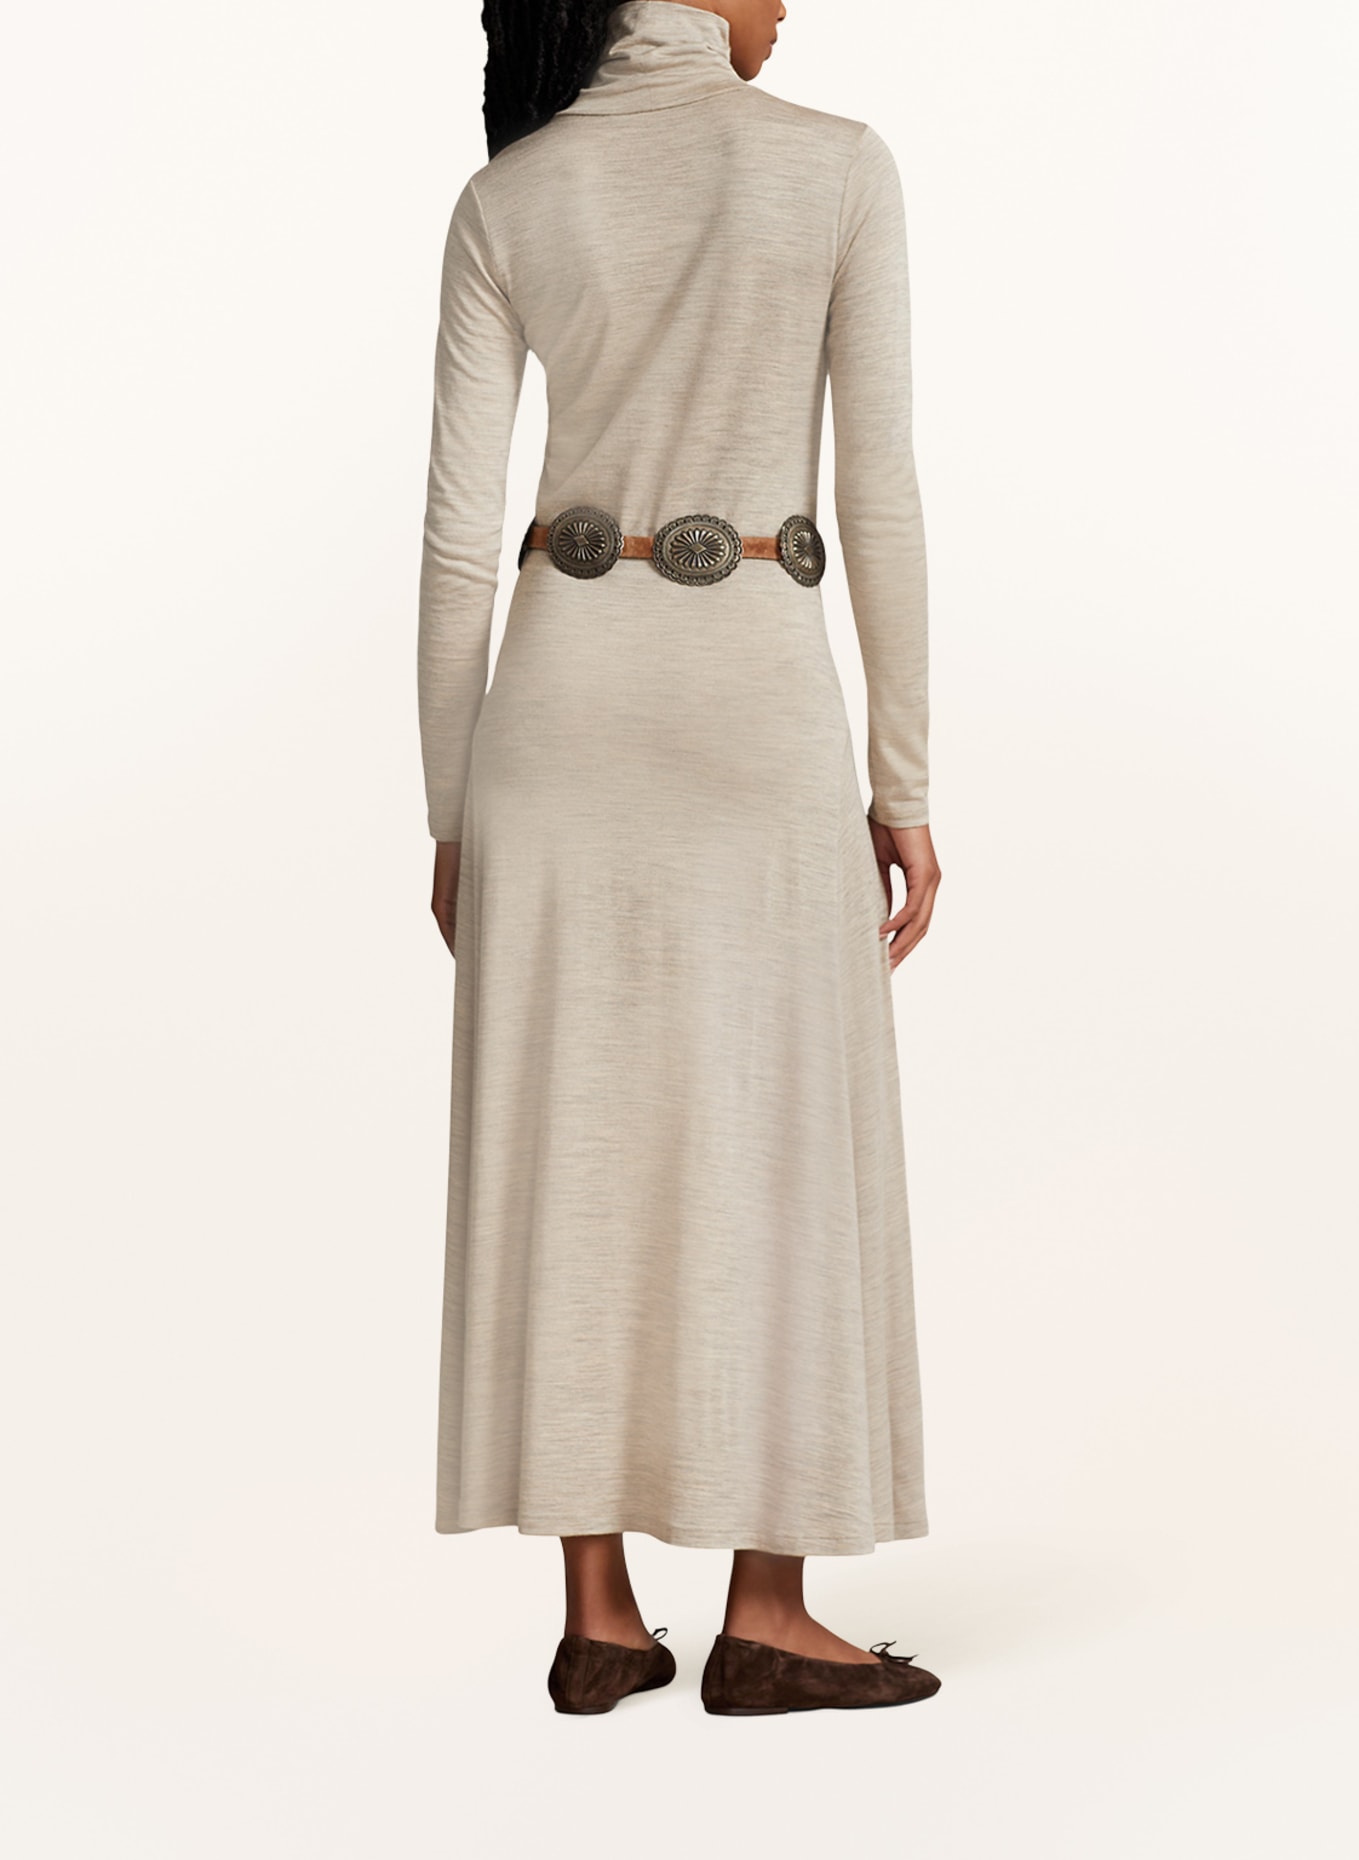 POLO RALPH LAUREN Knit dress, Color: BEIGE (Image 3)